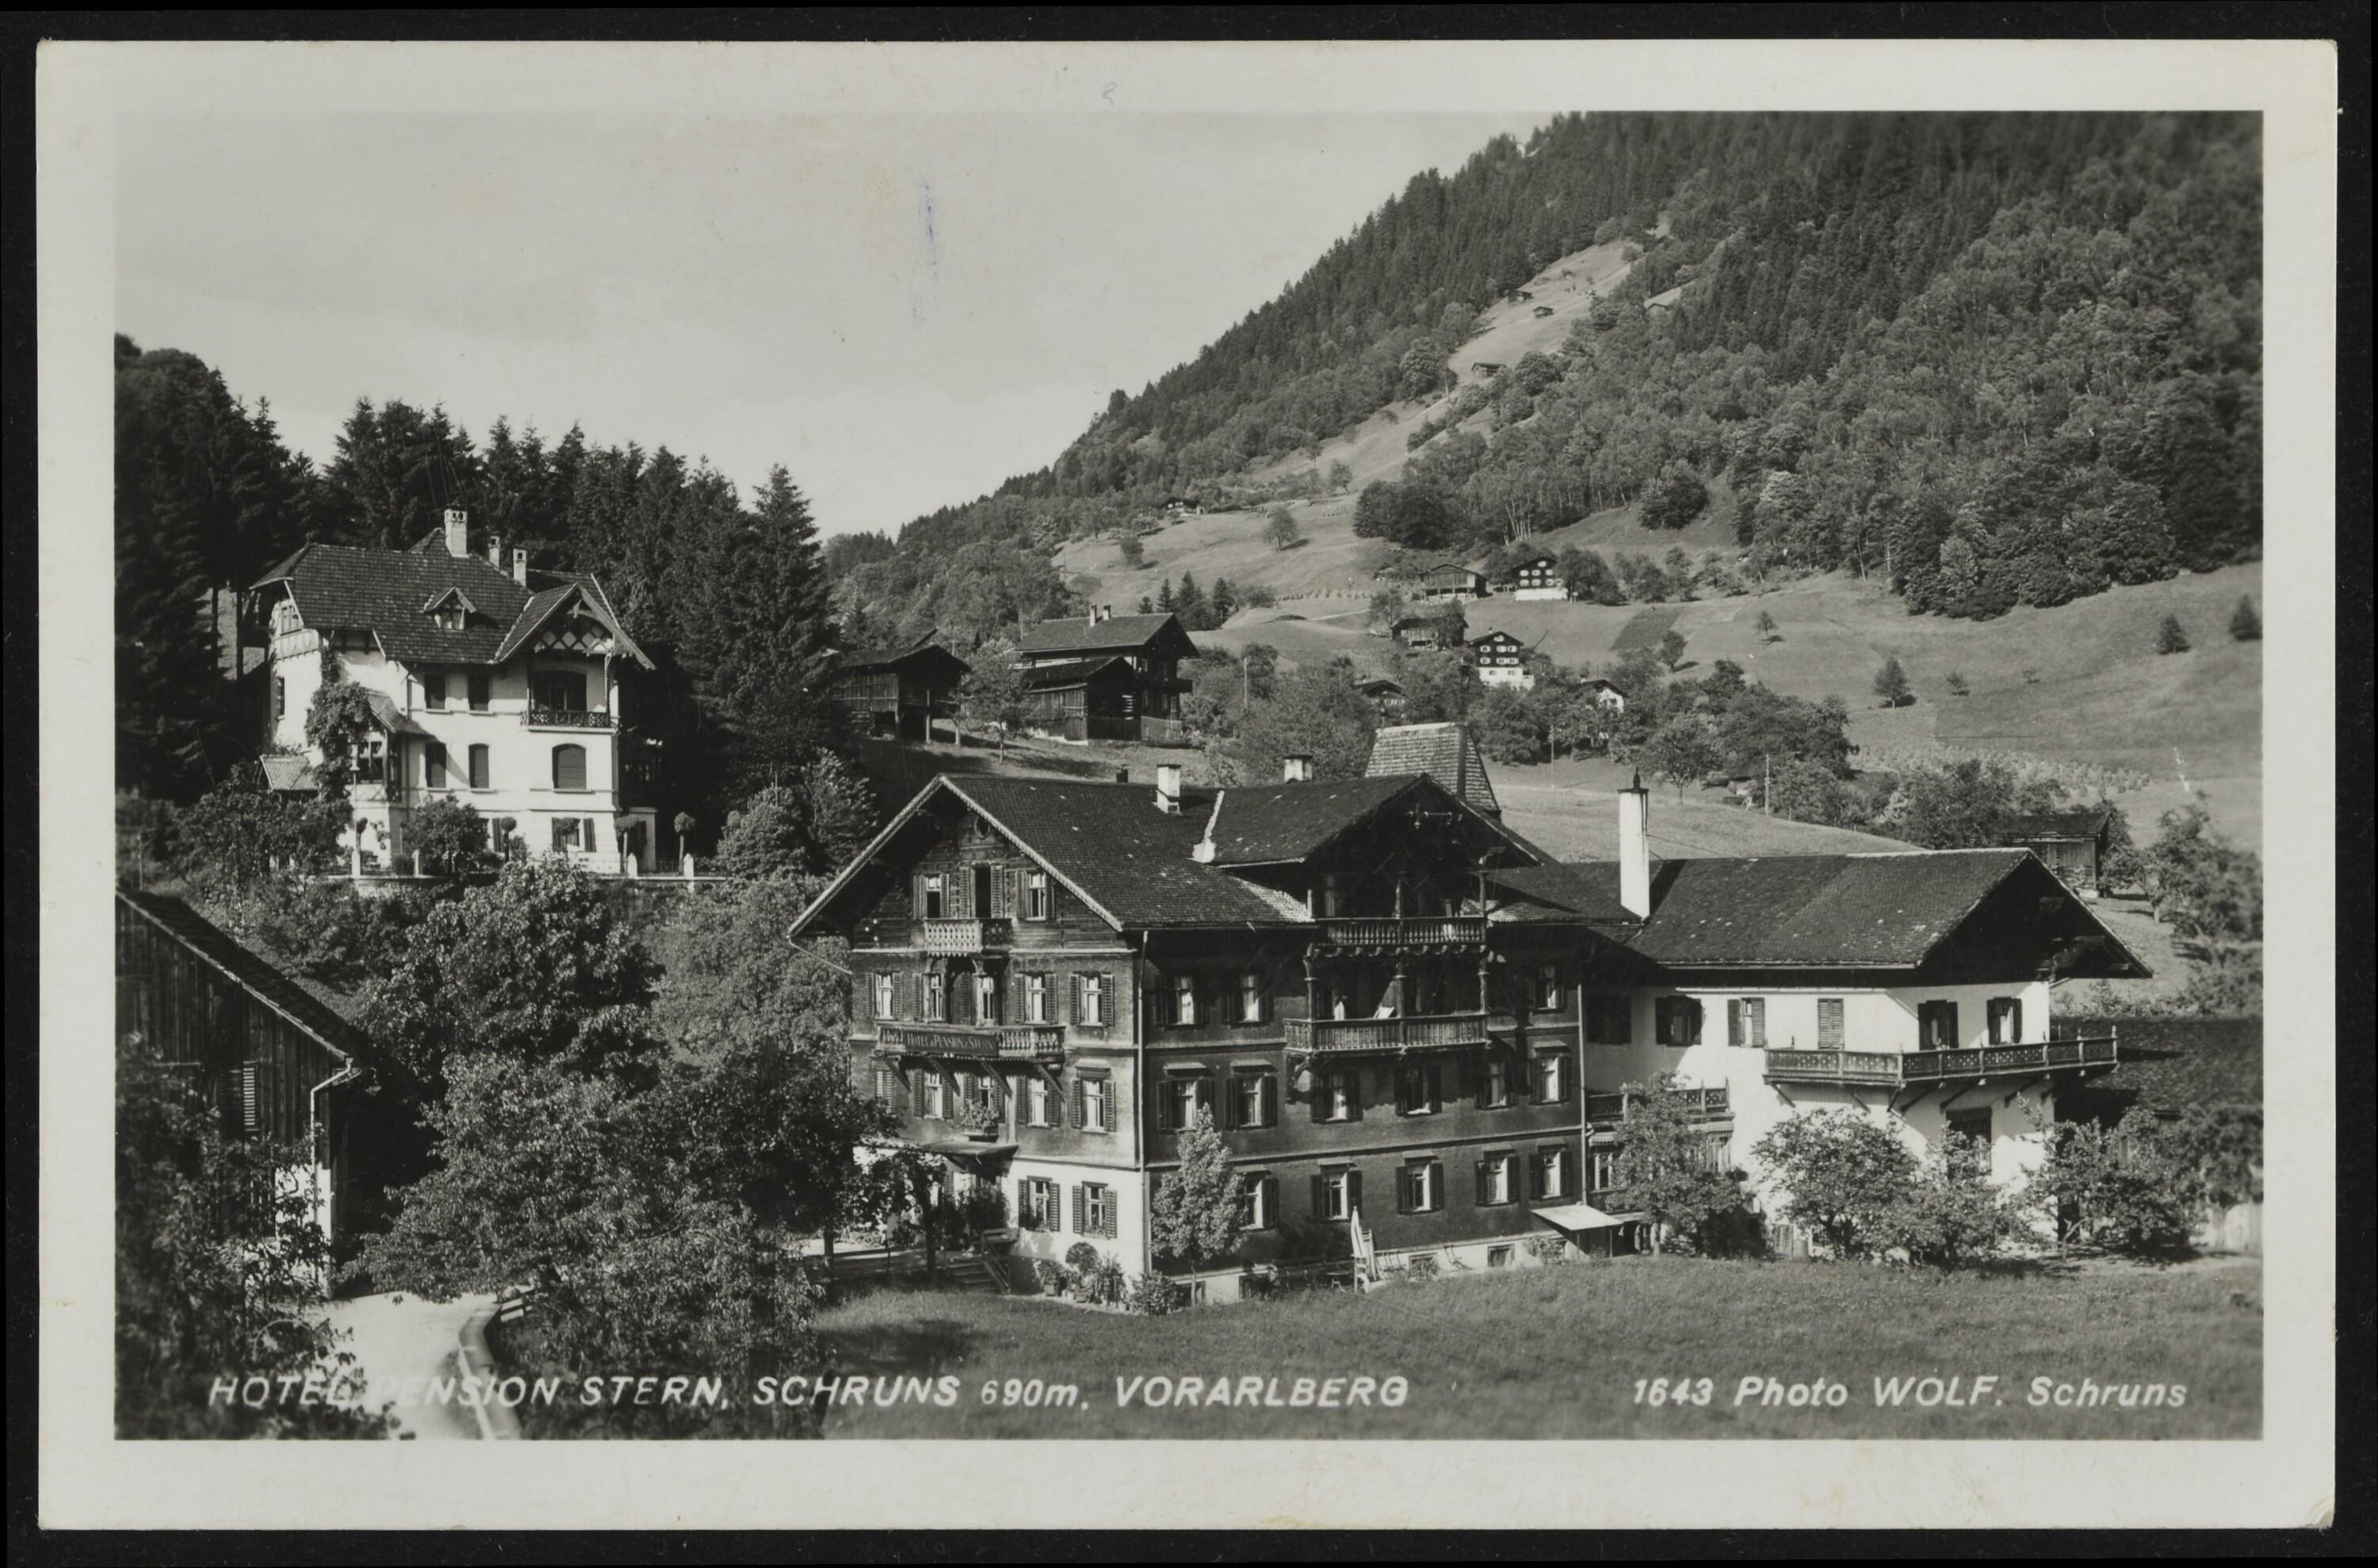 Hotel, Pension Stern, Schruns 690 m. Vorarlberg></div>


    <hr>
    <div class=